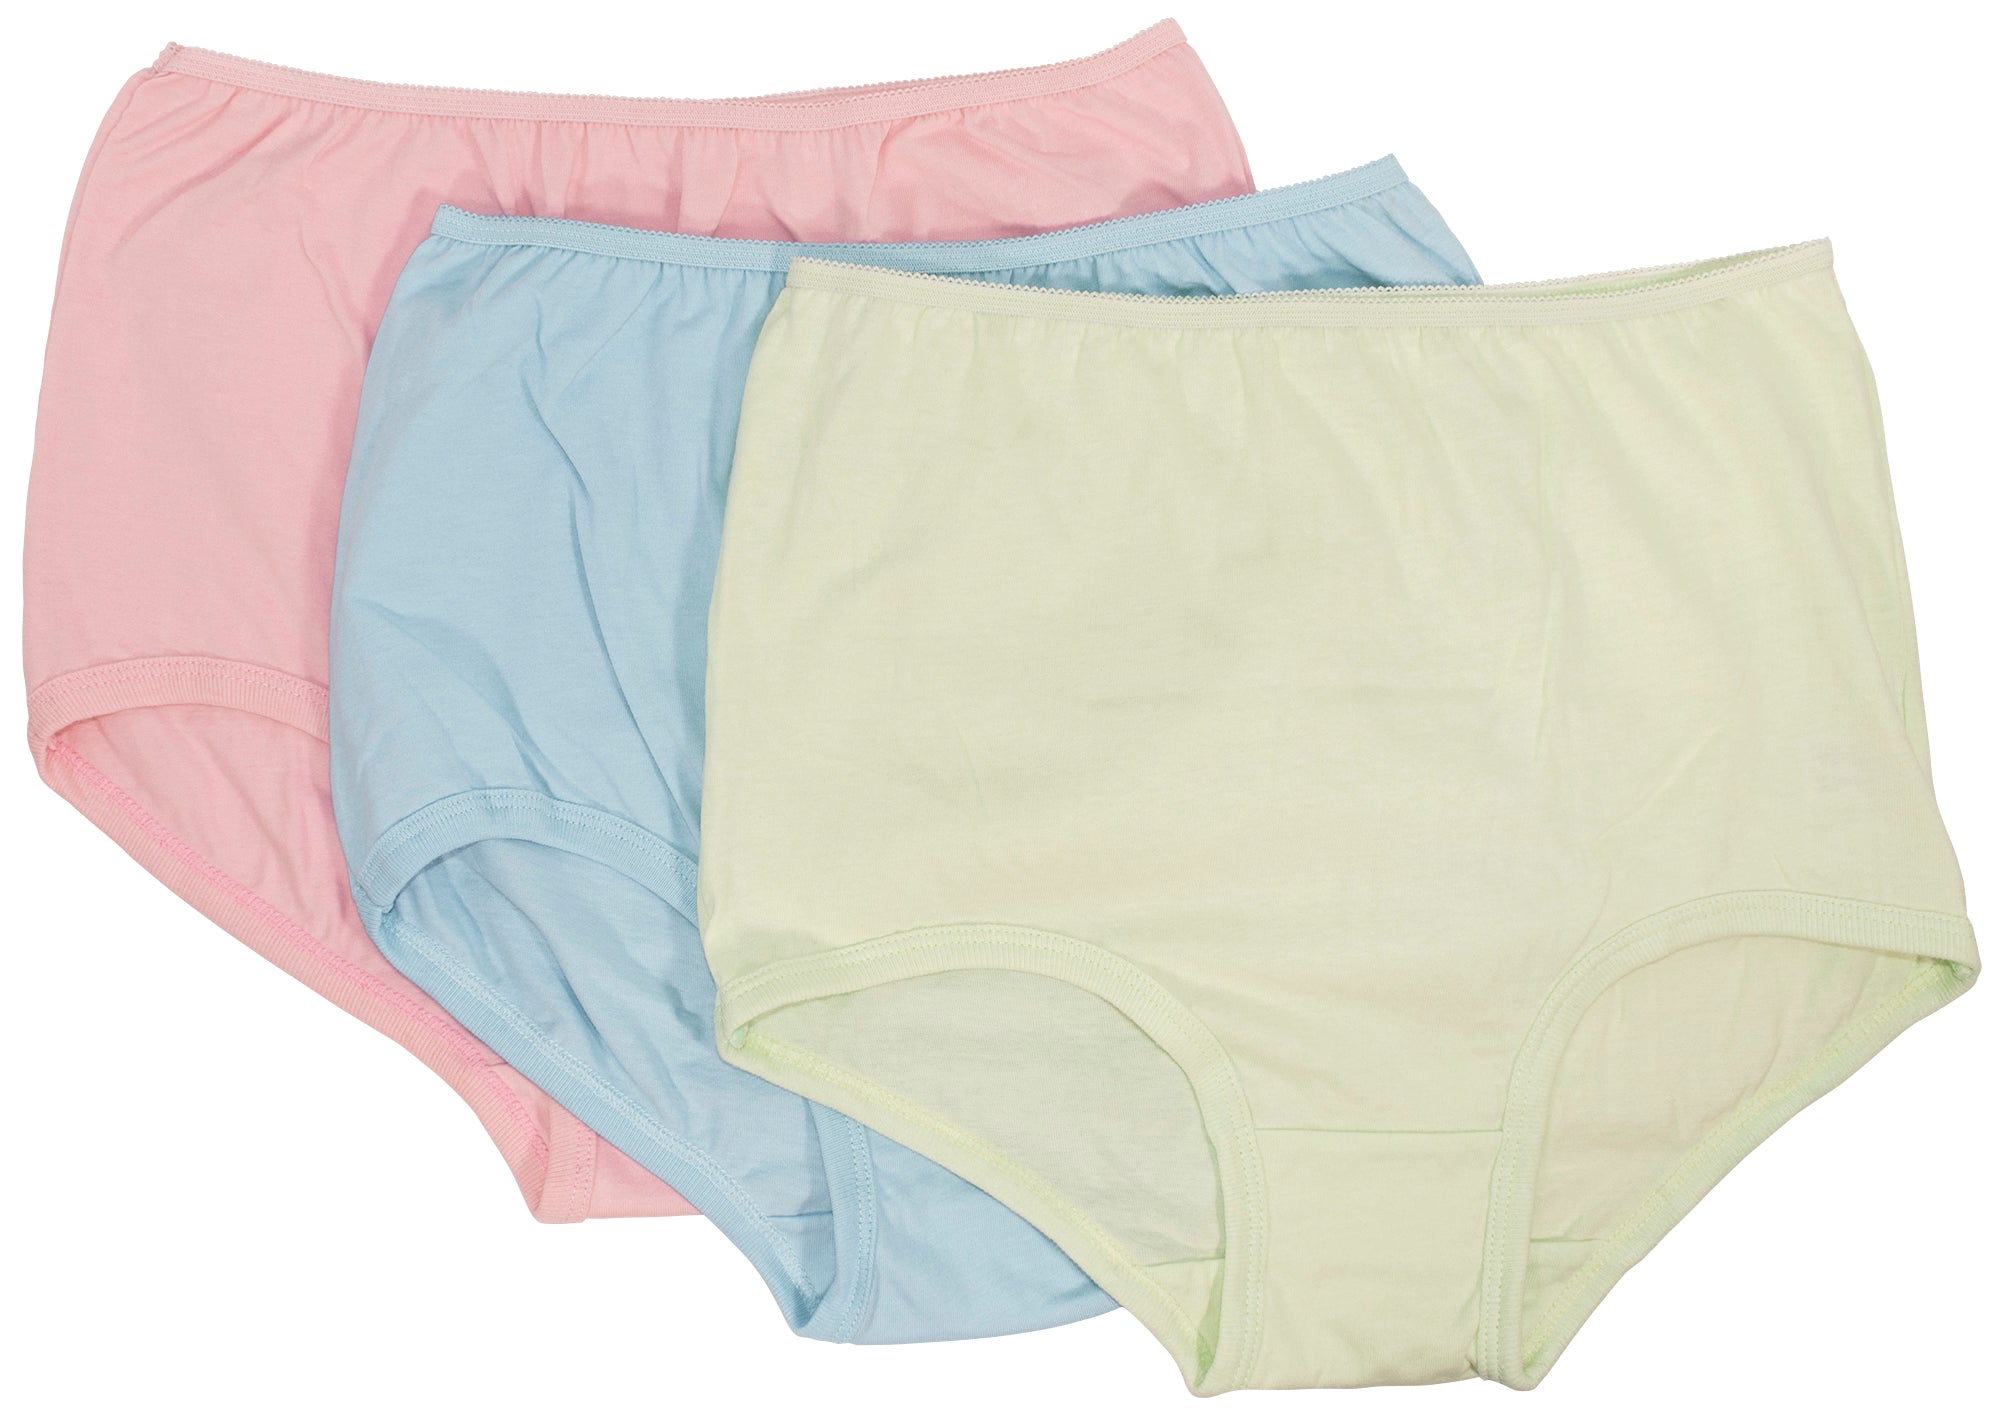 Plain Jane Nylon Panty Surprise Color 5 Pack